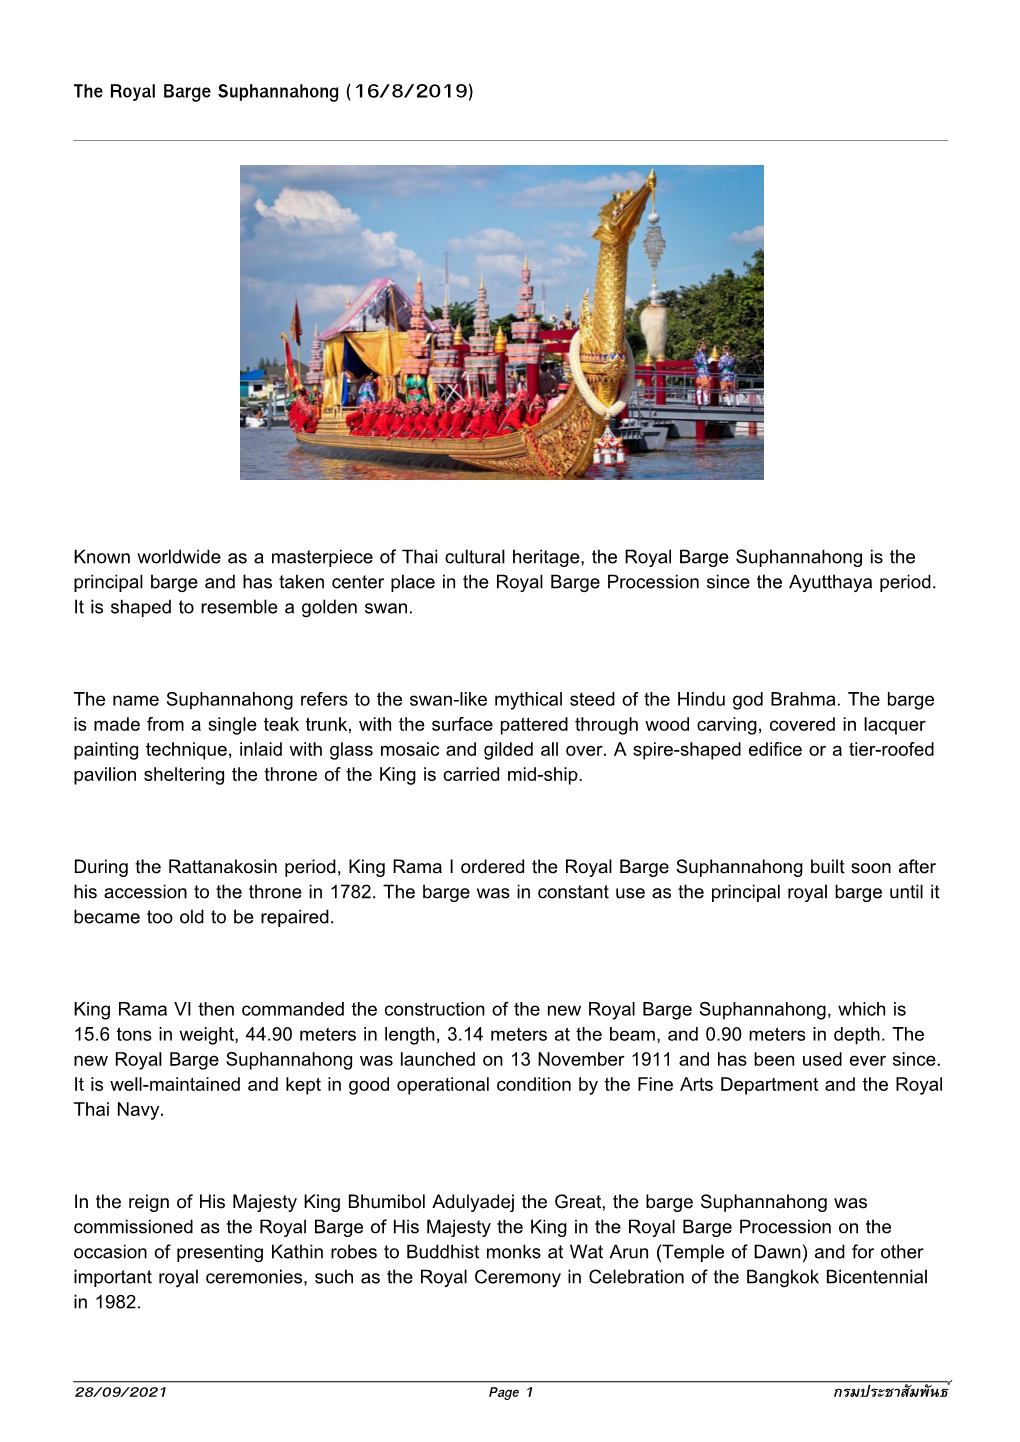 The Royal Barge Suphannahong (16/8/2019)